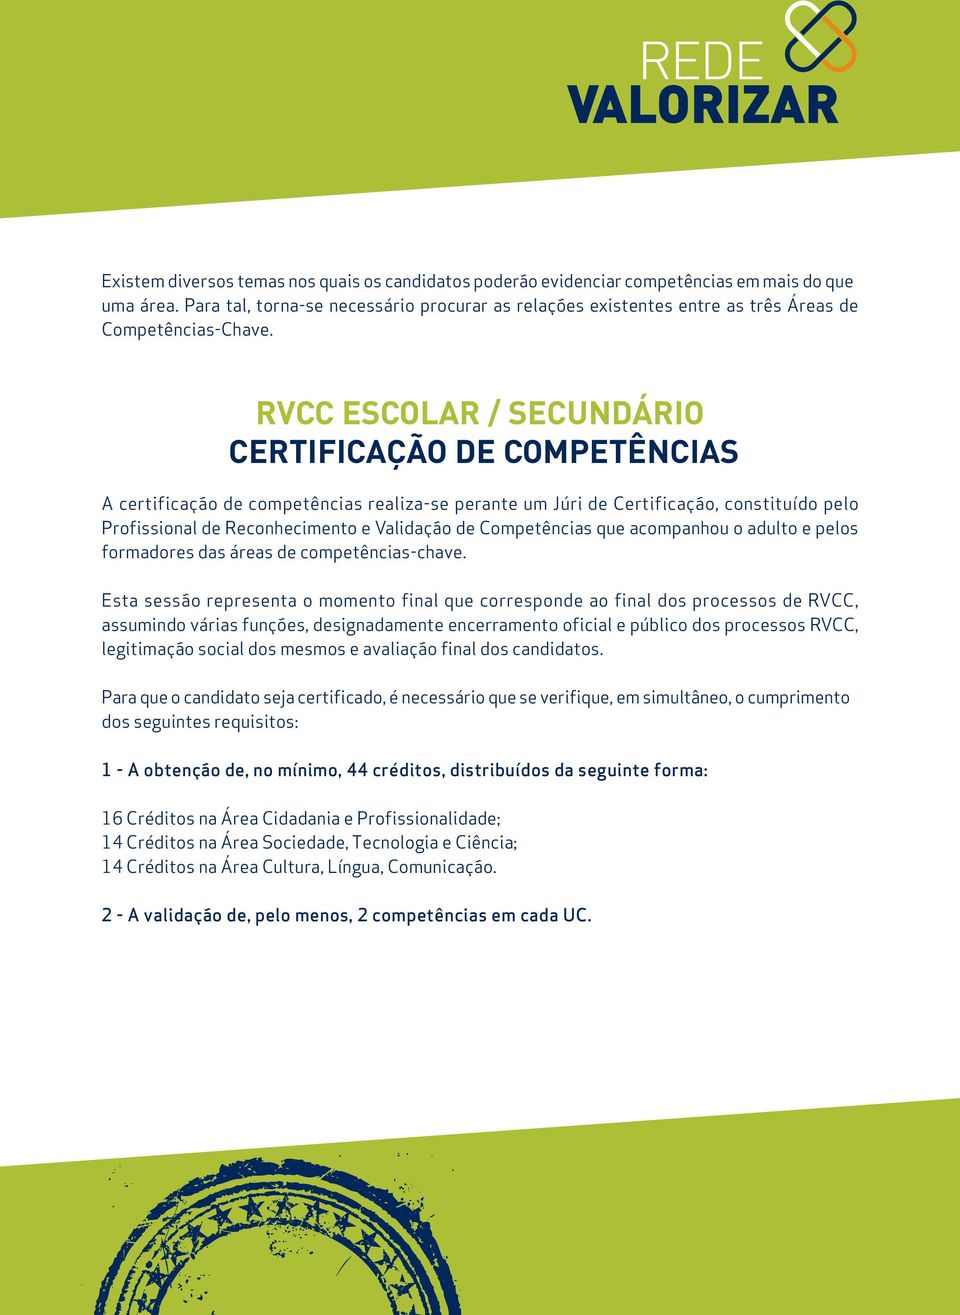 RVCC ESCOLAR / SECUNDÁRIO CERTIFICAÇÃO DE COMPETÊNCIAS A certificação de competências realiza-se perante um Júri de Certificação, constituído pelo Profissional de Reconhecimento e Validação de